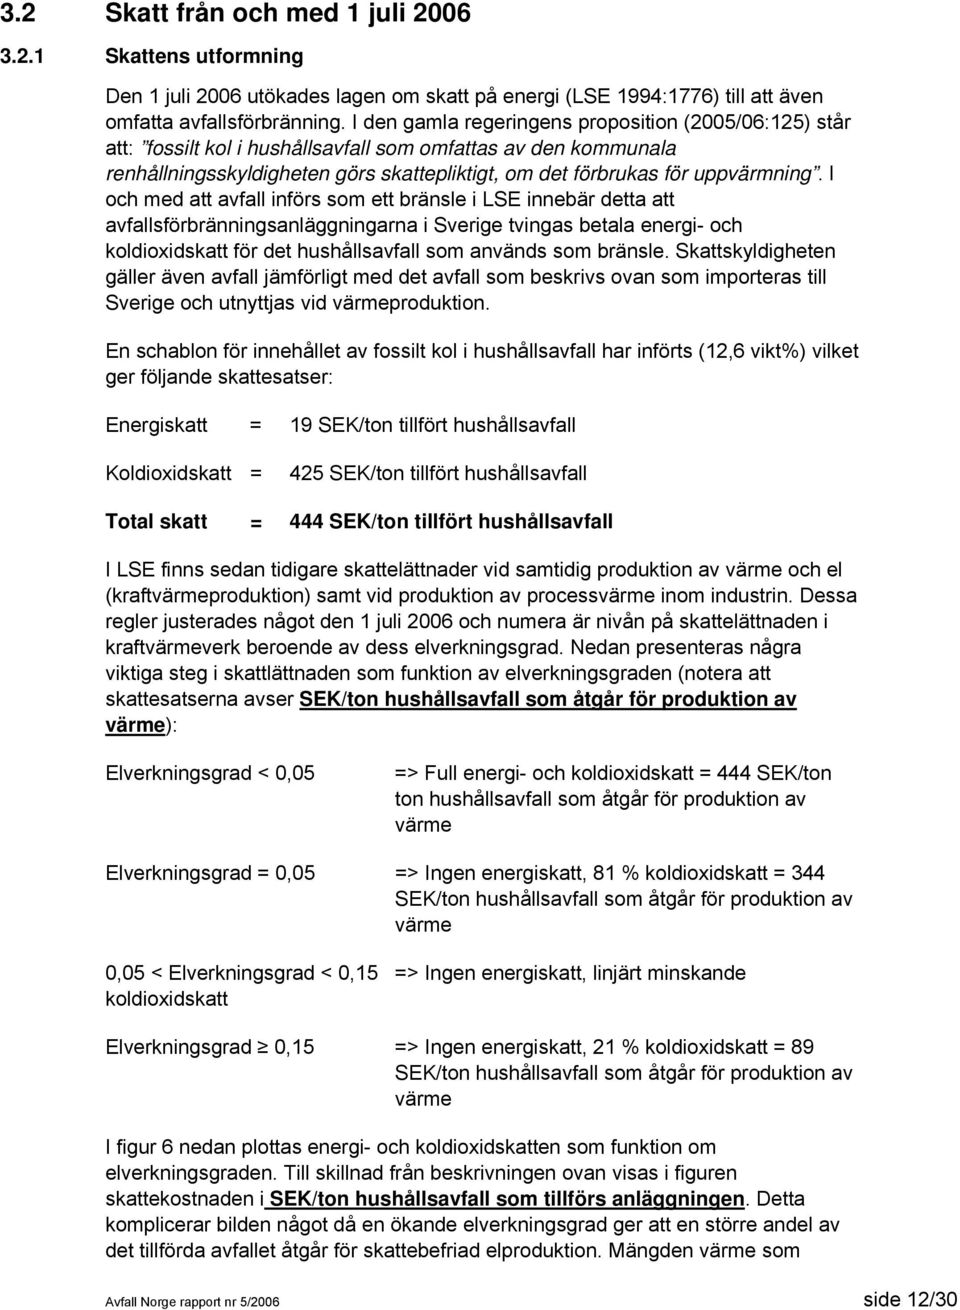 I och med att avfall införs som ett bränsle i LSE innebär detta att avfallsförbränningsanläggningarna i Sverige tvingas betala energi- och koldioxidskatt för det hushållsavfall som används som